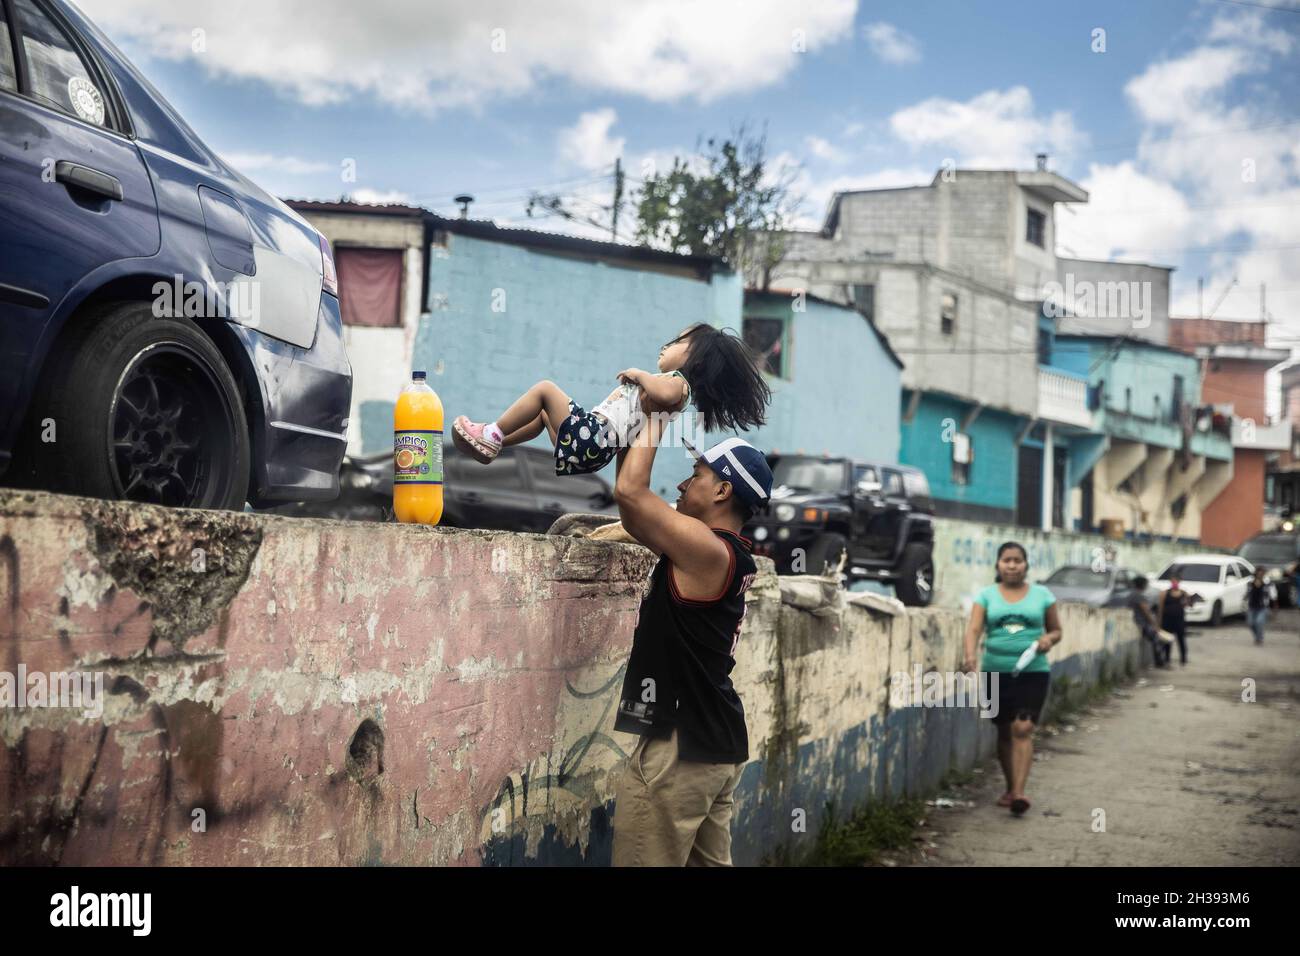 Guatemala-Stadt, Guatemala. Juli 2021. Ein Vater gibt seiner Tochter einen Schub in Territory, das von der berüchtigten MS-13-Bande kontrolliert wird. Nach Angaben von Einheimischen, die in diesen Gebieten leben, ist die Gewalt im Vergleich zu 2006-2011 zurückgegangen. (Bild: © David Tesinsky/ZUMA Press Wire) Stockfoto